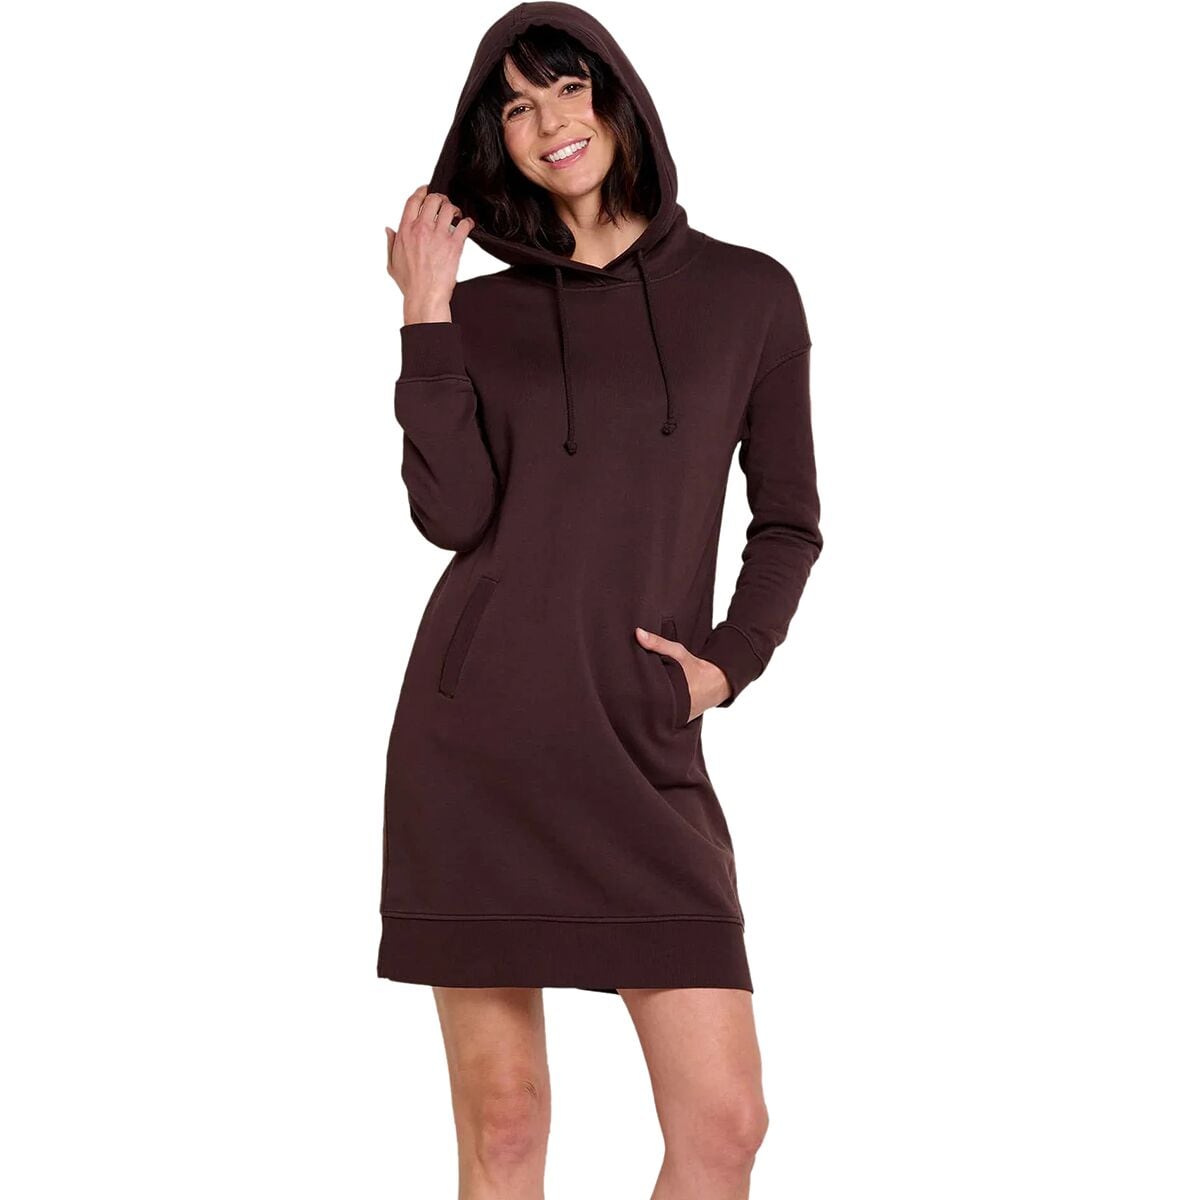 Hemp Daybreaker Hooded Dress - Women